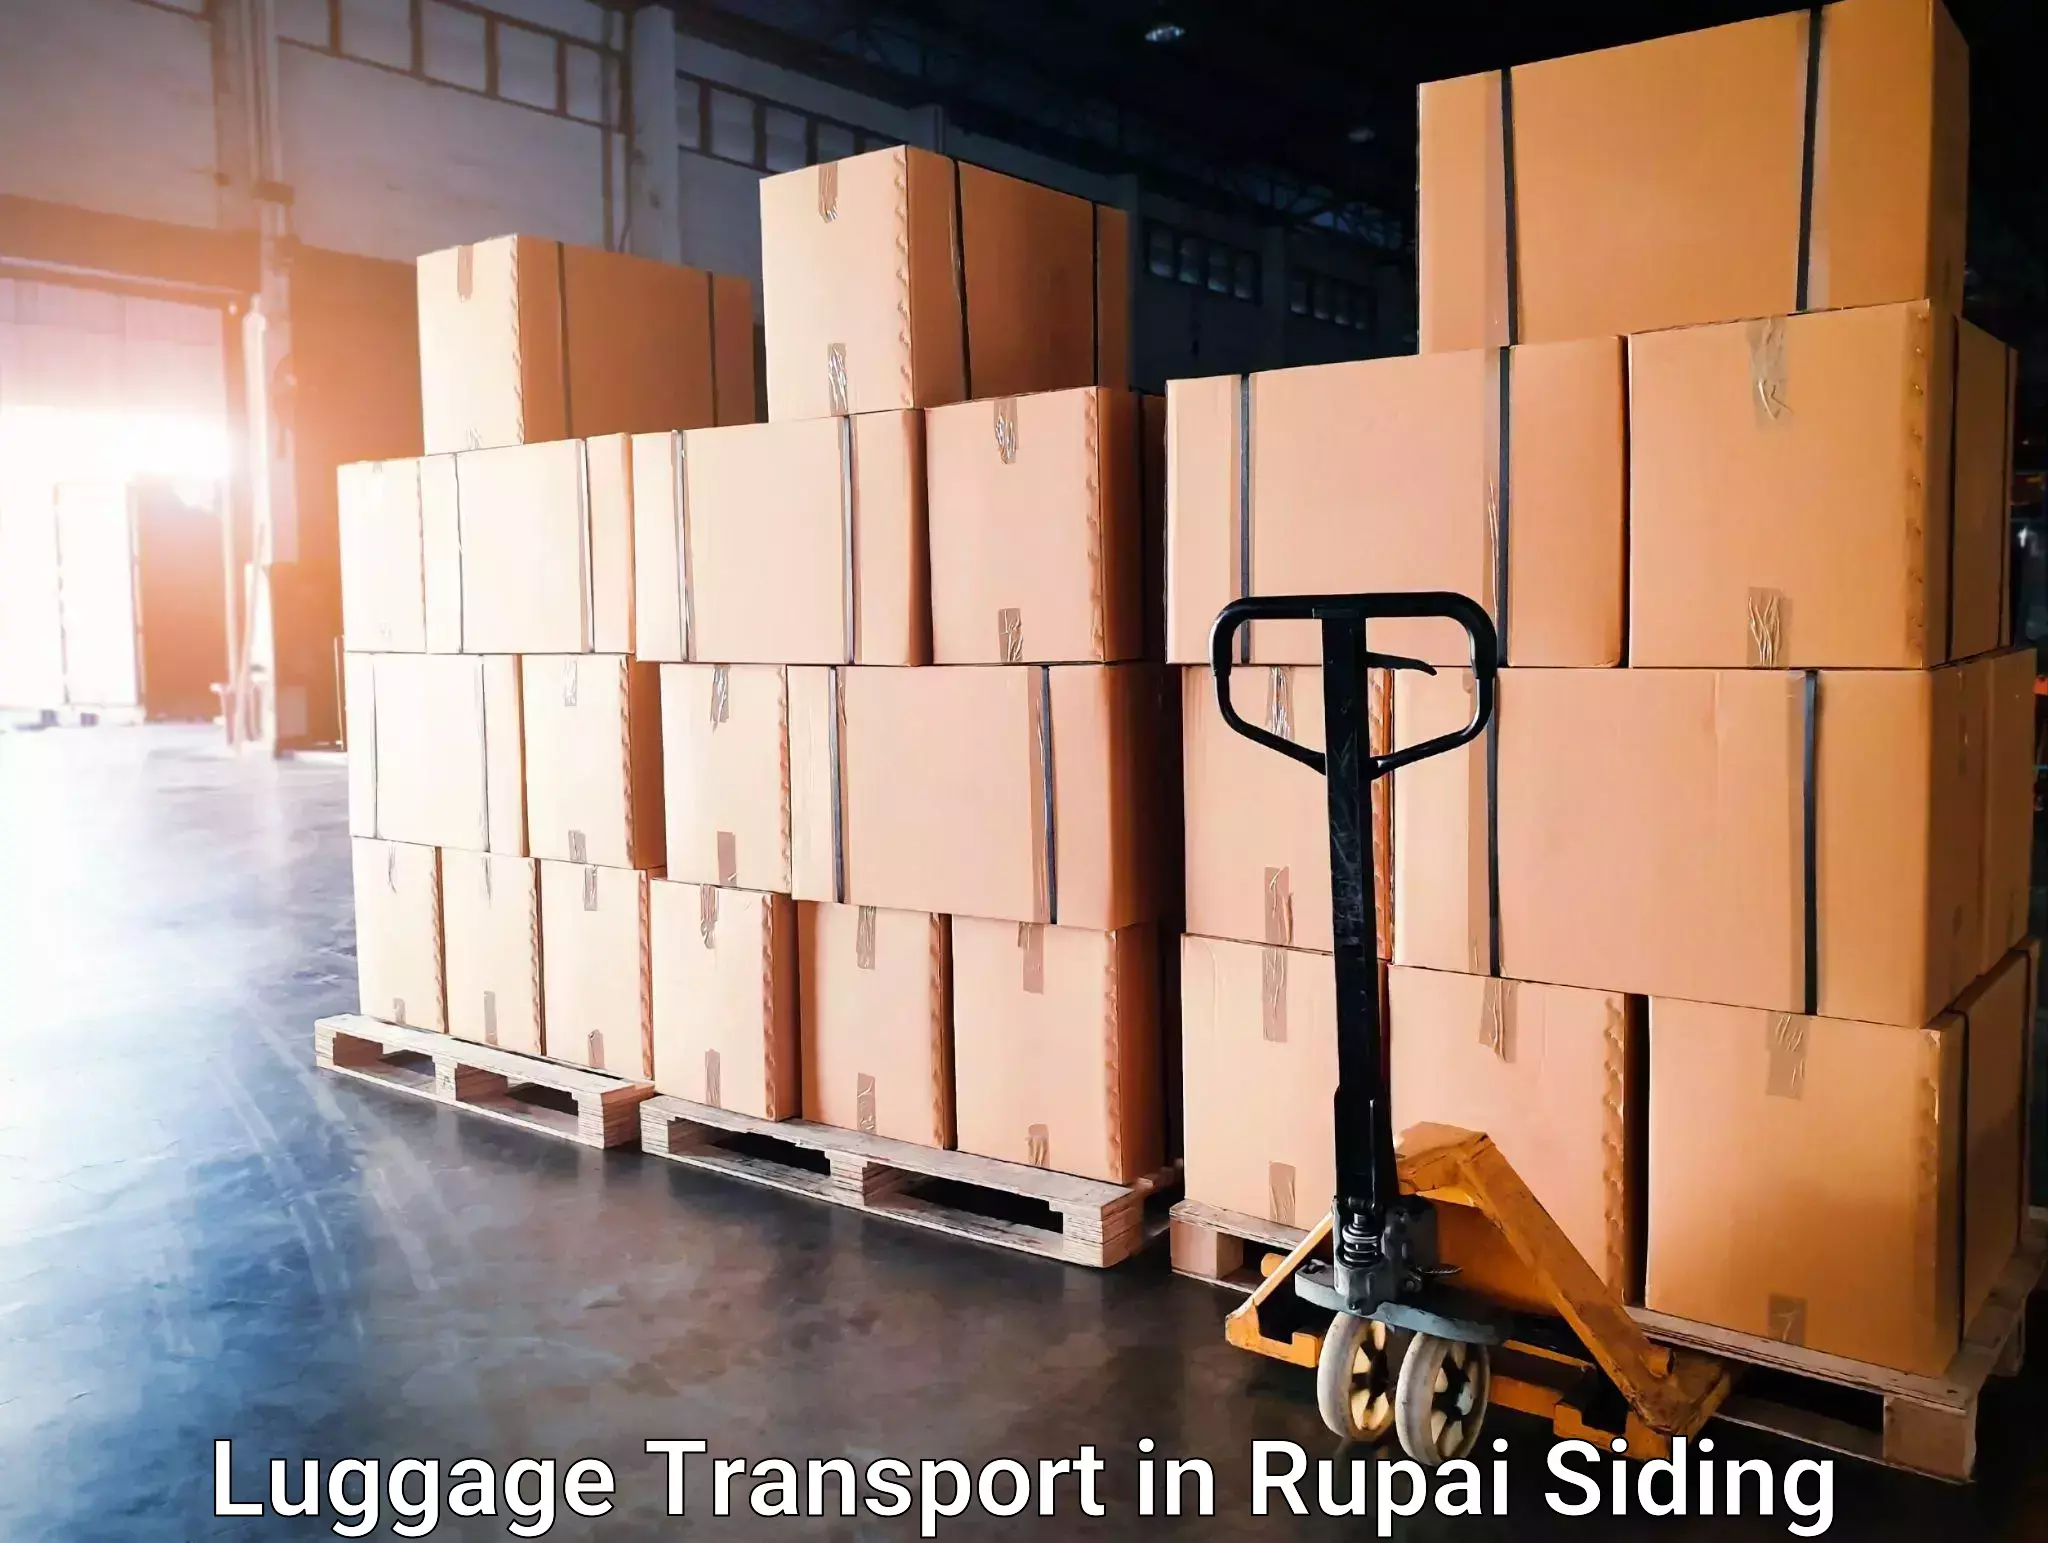 Urban luggage shipping in Rupai Siding